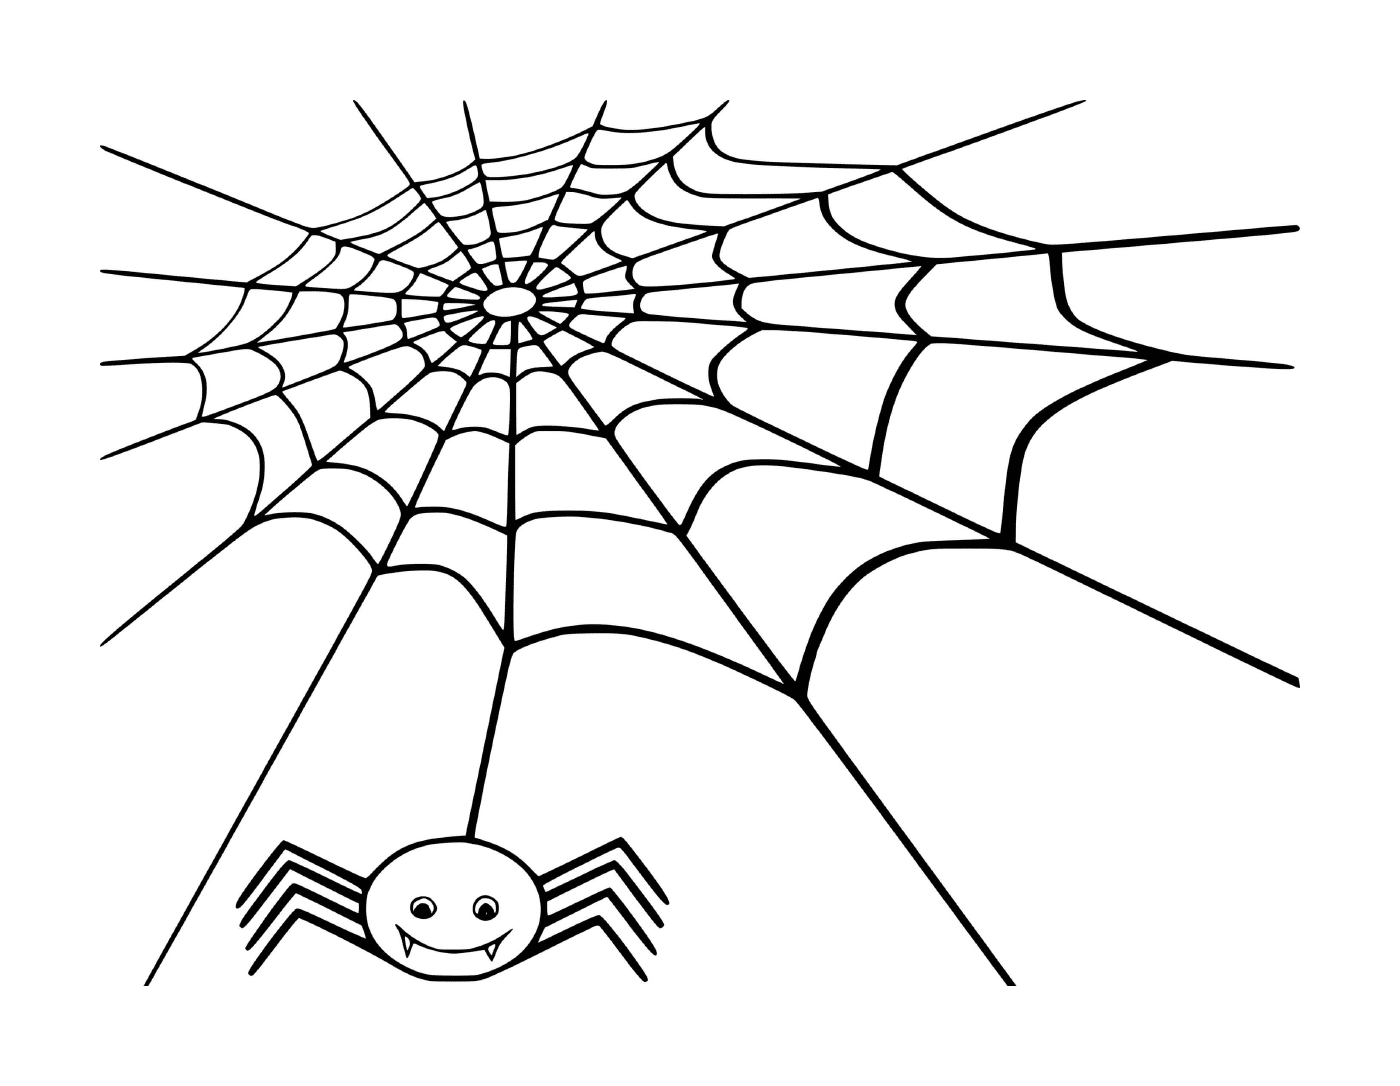  蜘蛛的蜘蛛网 蜘蛛等待猎物的蜘蛛网 